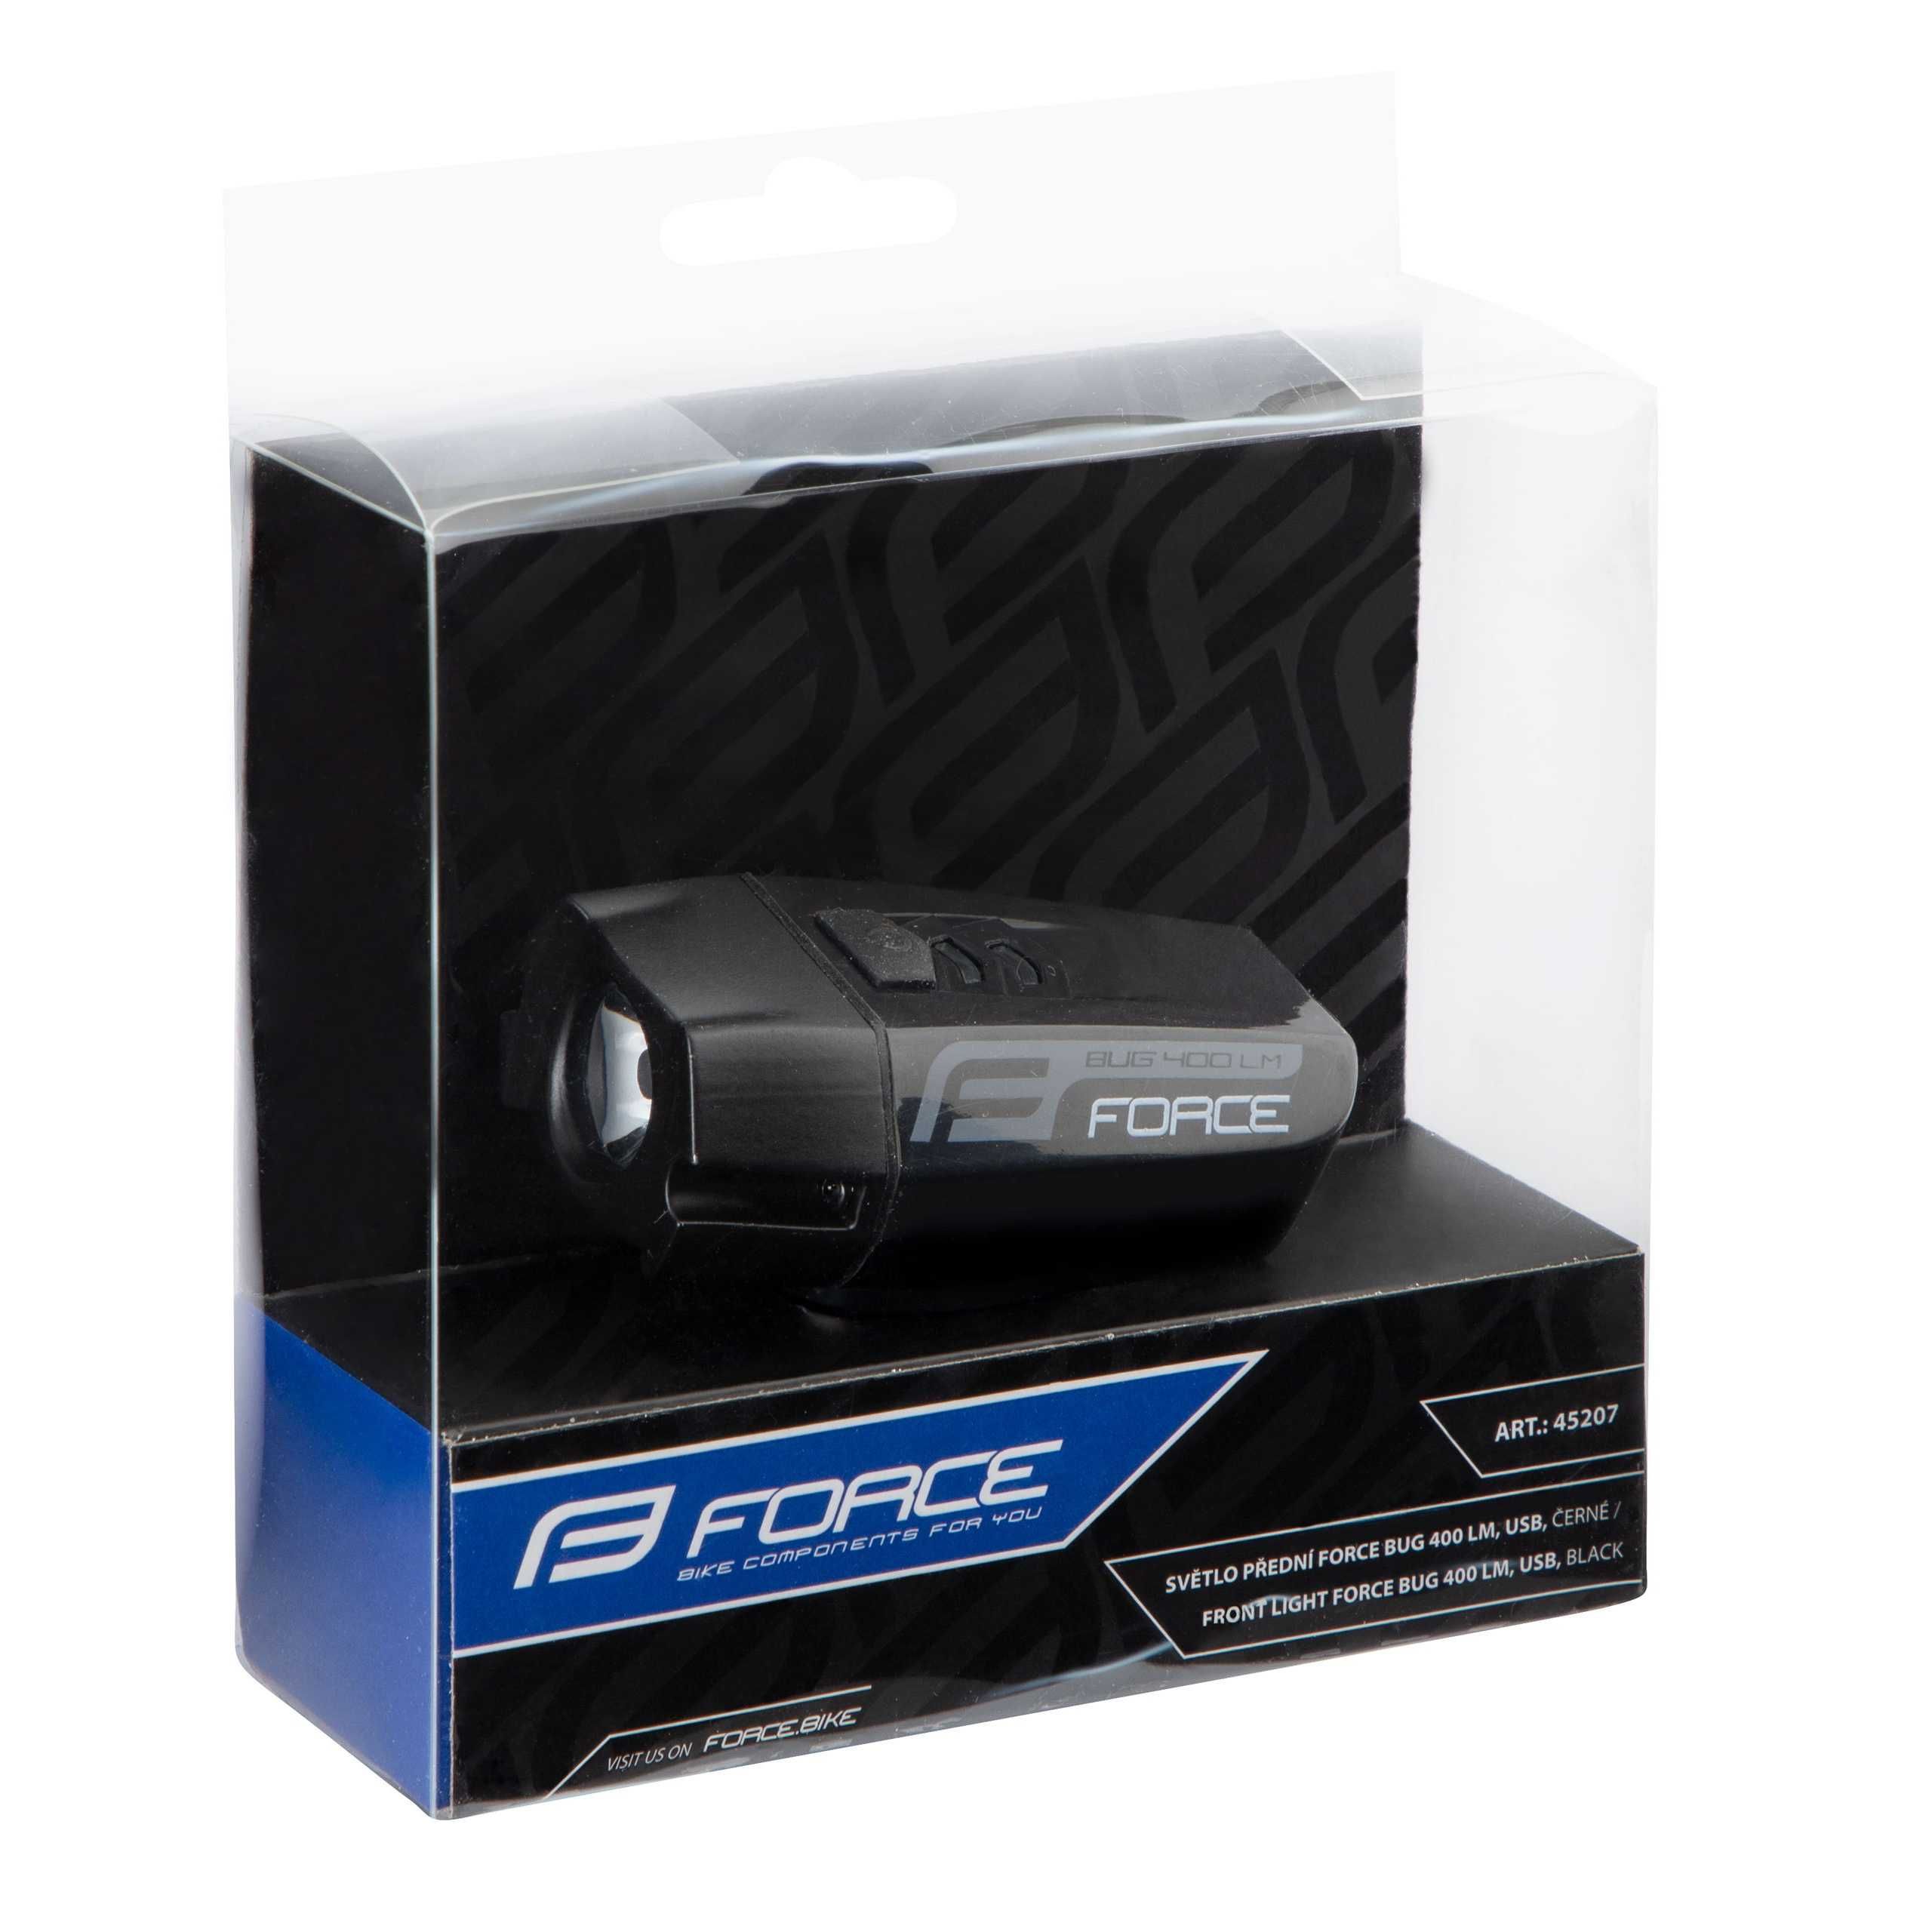 Предна LED светлина за велосипед фар FORCE BUG 400LM USB, черен